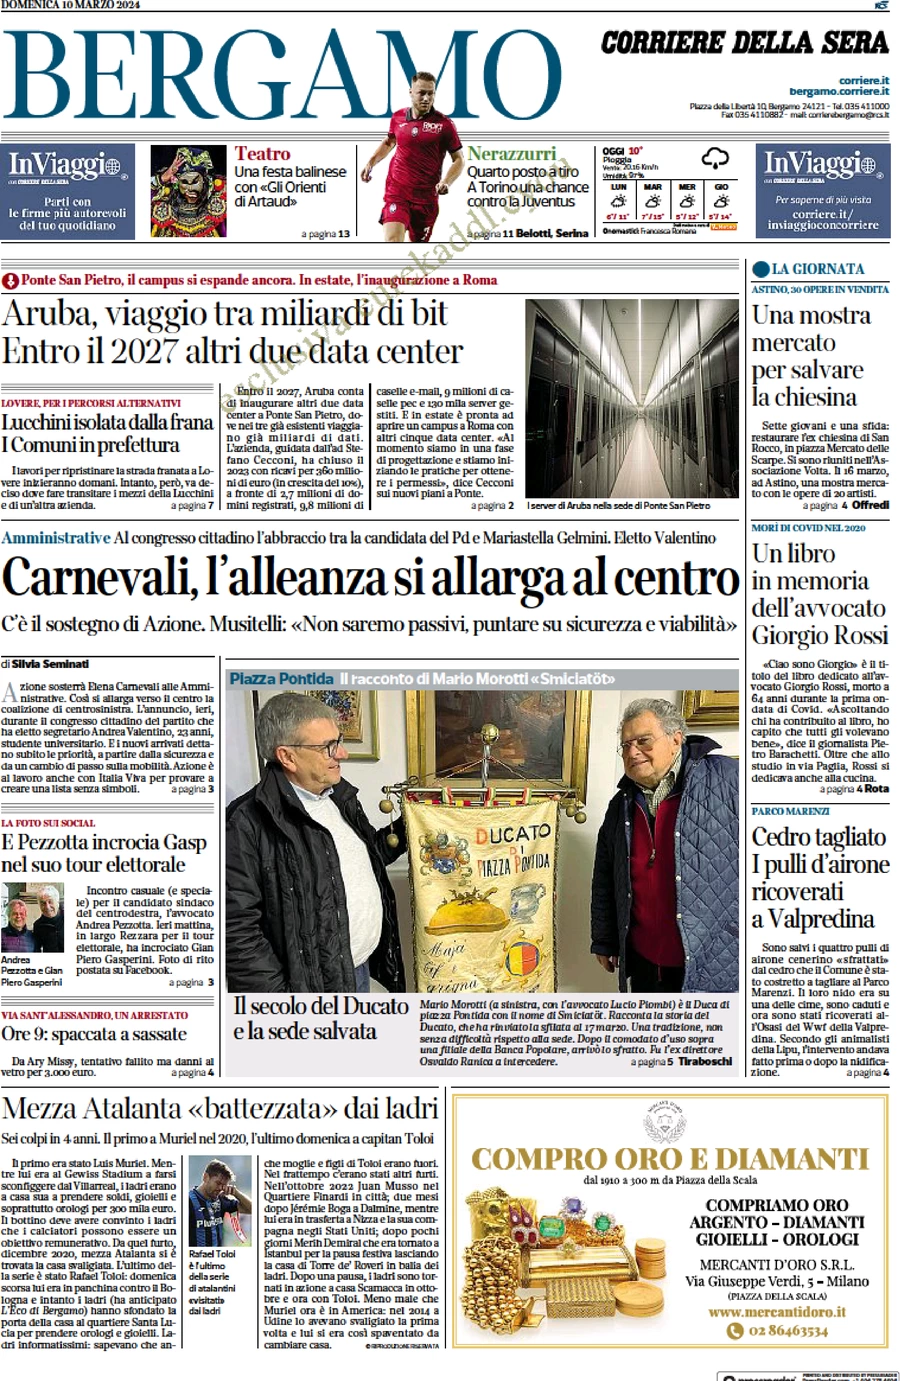 anteprima della prima pagina di corriere-della-sera-bergamo del 10/03/2024